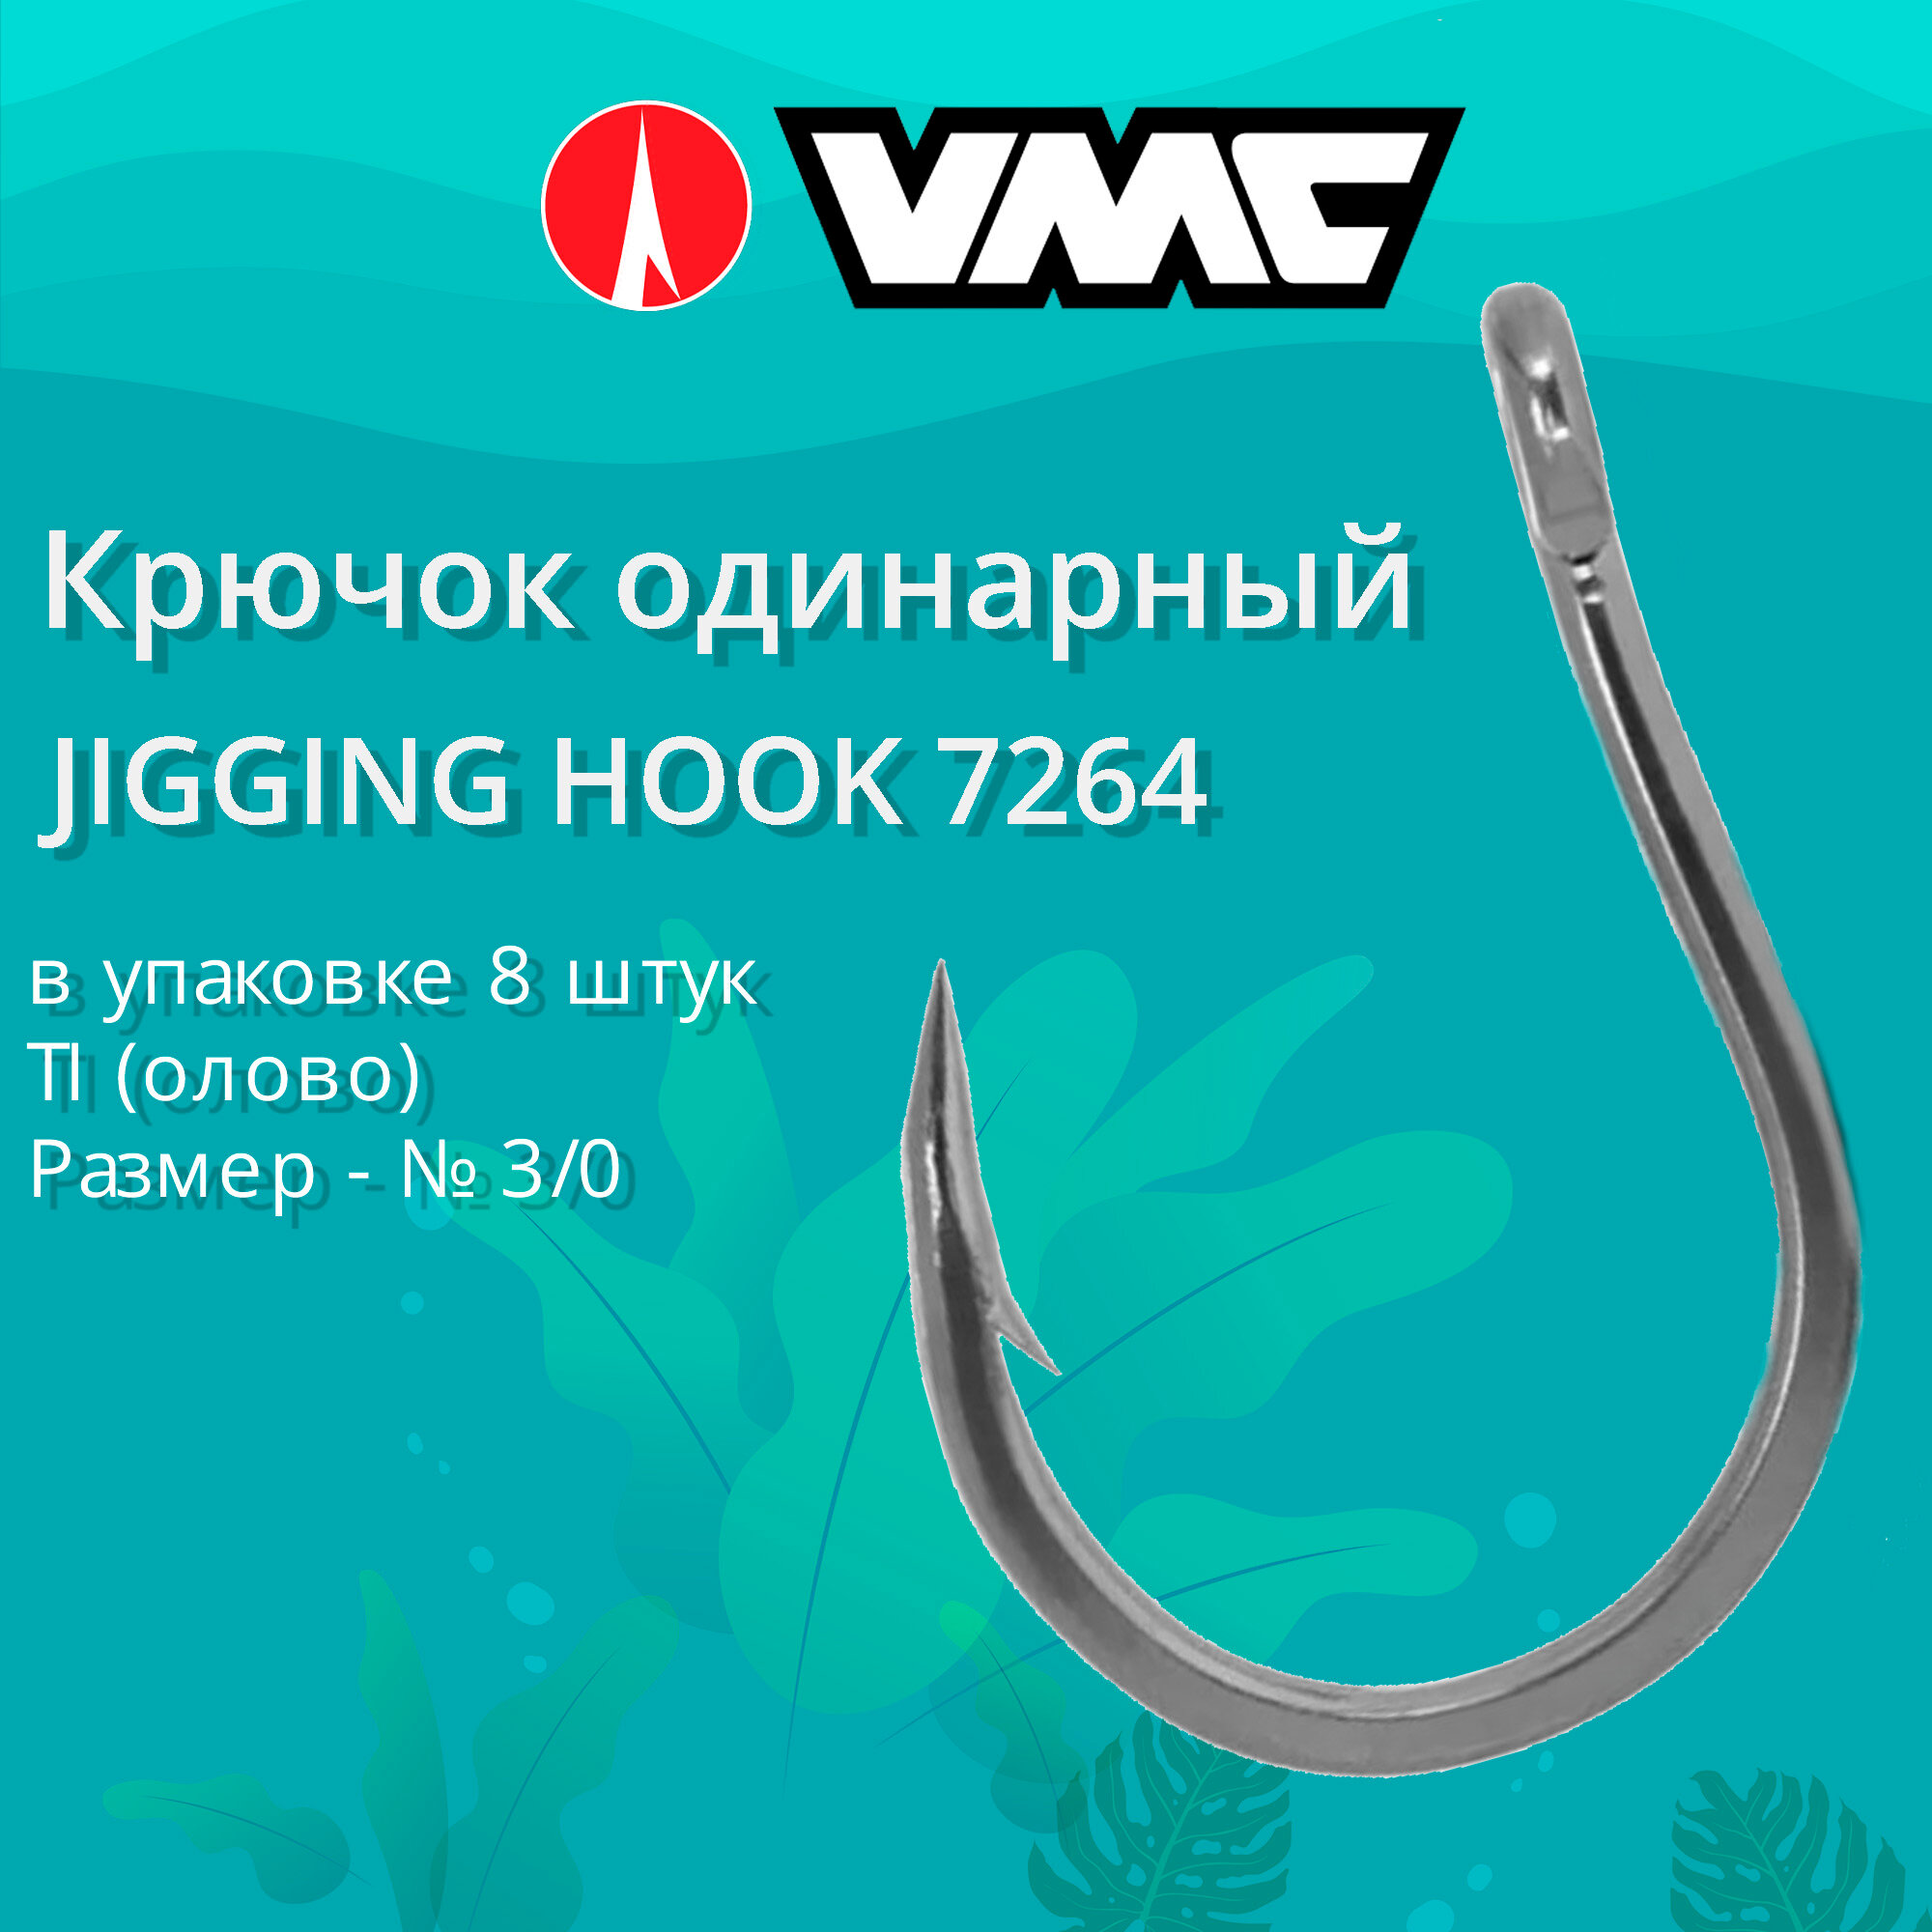 Крючок одинарный рыболовный VMC JIGGING HOOK 7264 TI (олово), №3/0, 8 штук в упаковке